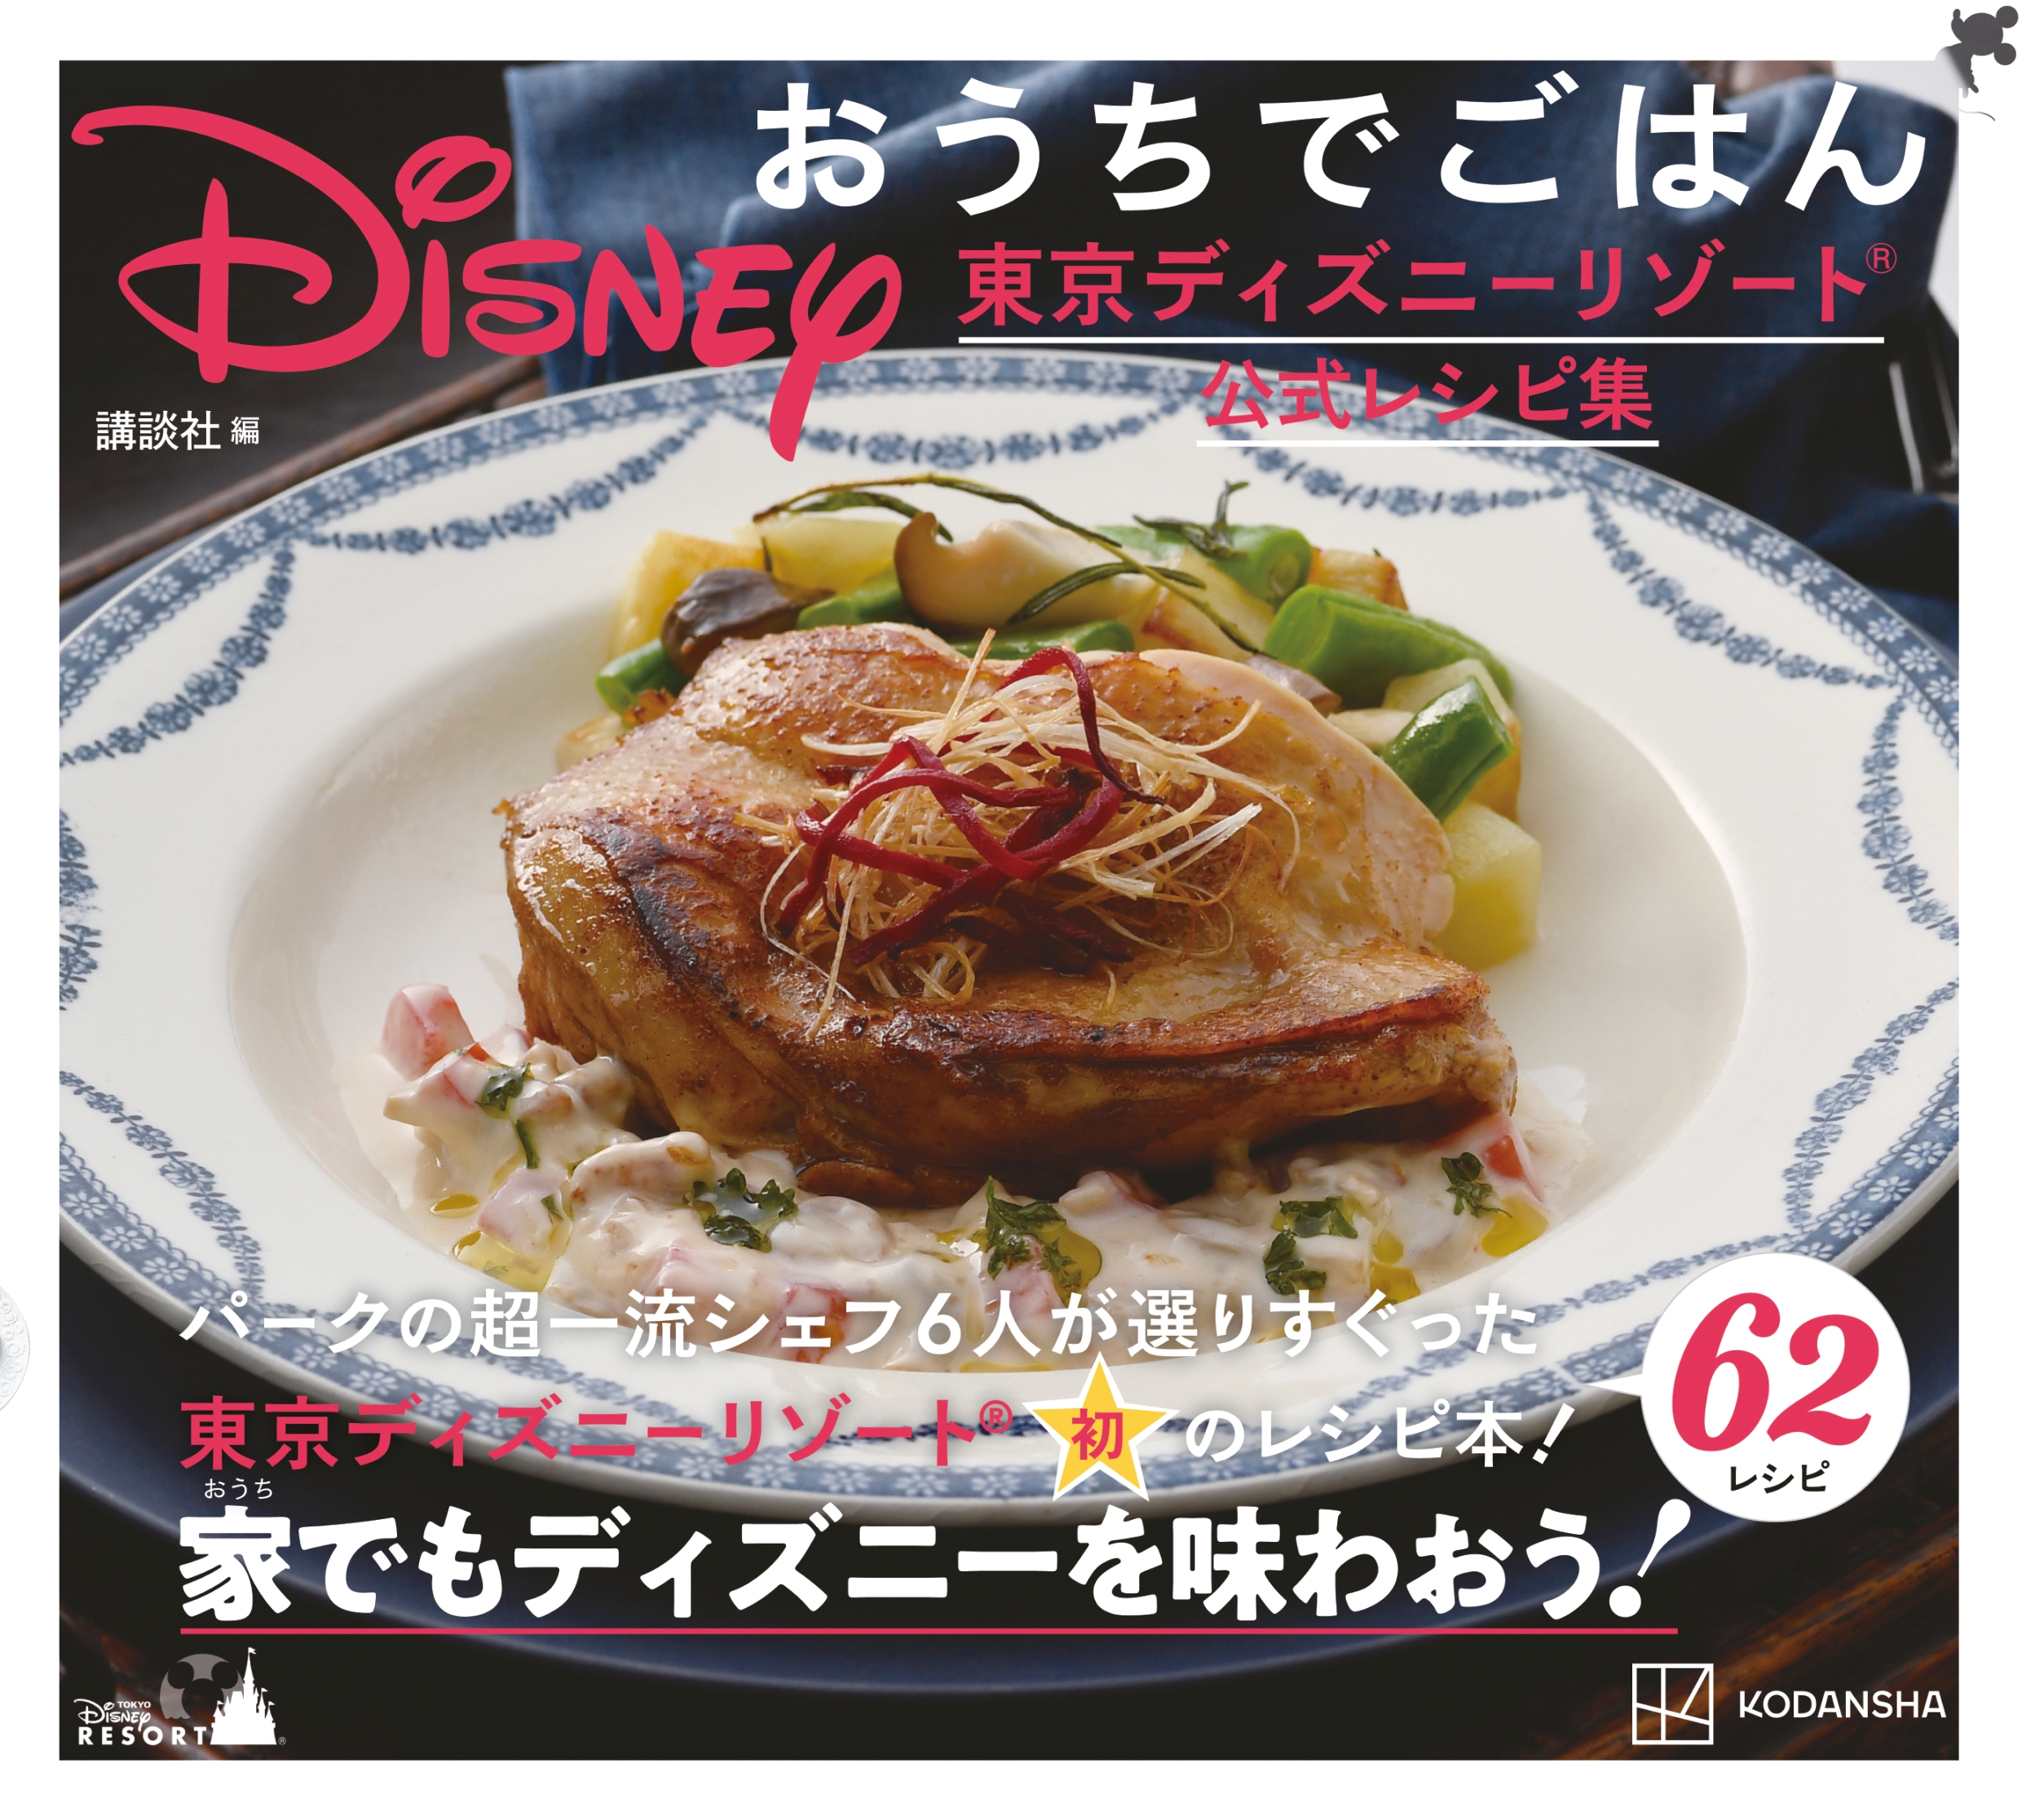 今日発売 東京ディズニーリゾート公式レシピ本の詳細が明らかに ギョウザドッグ や マゼランズの料理 など全62種類収録されているよー Pouch ポーチ